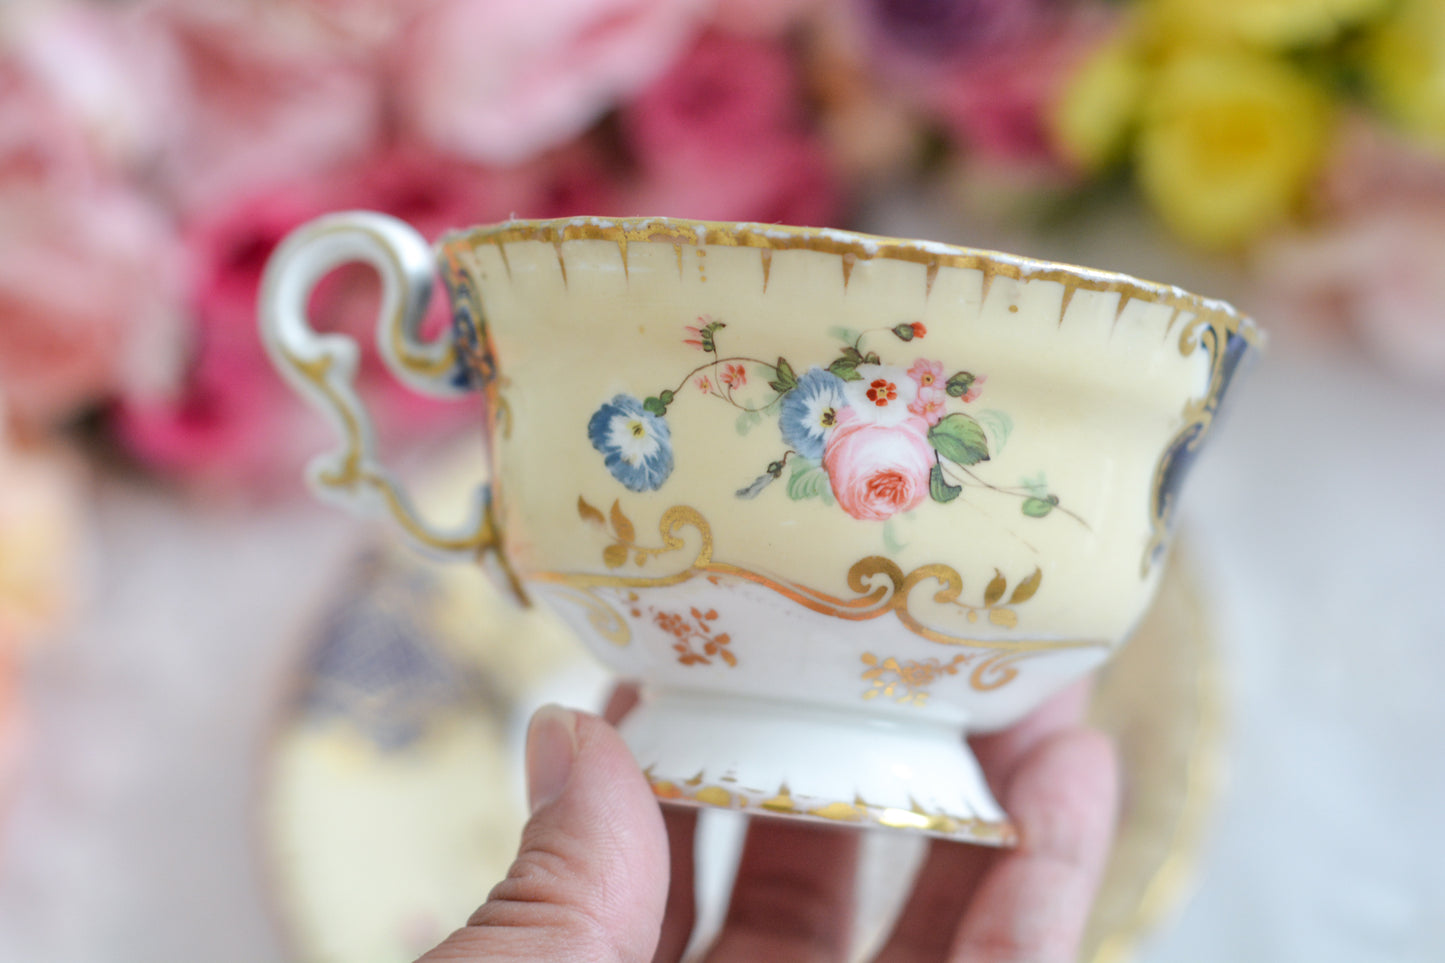 コープランドギャレットの1833年〜1847年頃に作られた貴重なカップ&ソーサーです。コープランド＆ギャレット社は14年ほどしか稼働していなかったのですが、この時に作られたカップは優美で、長い時を経た現代においても人々を魅了しています。こちらのカップも優美なシェイプ、ハンドペイントで描かれた花々は上品で美しく見惚れてしまうほど。長い年月を経てやってきてくれた美しいカップをぜひご覧ください。